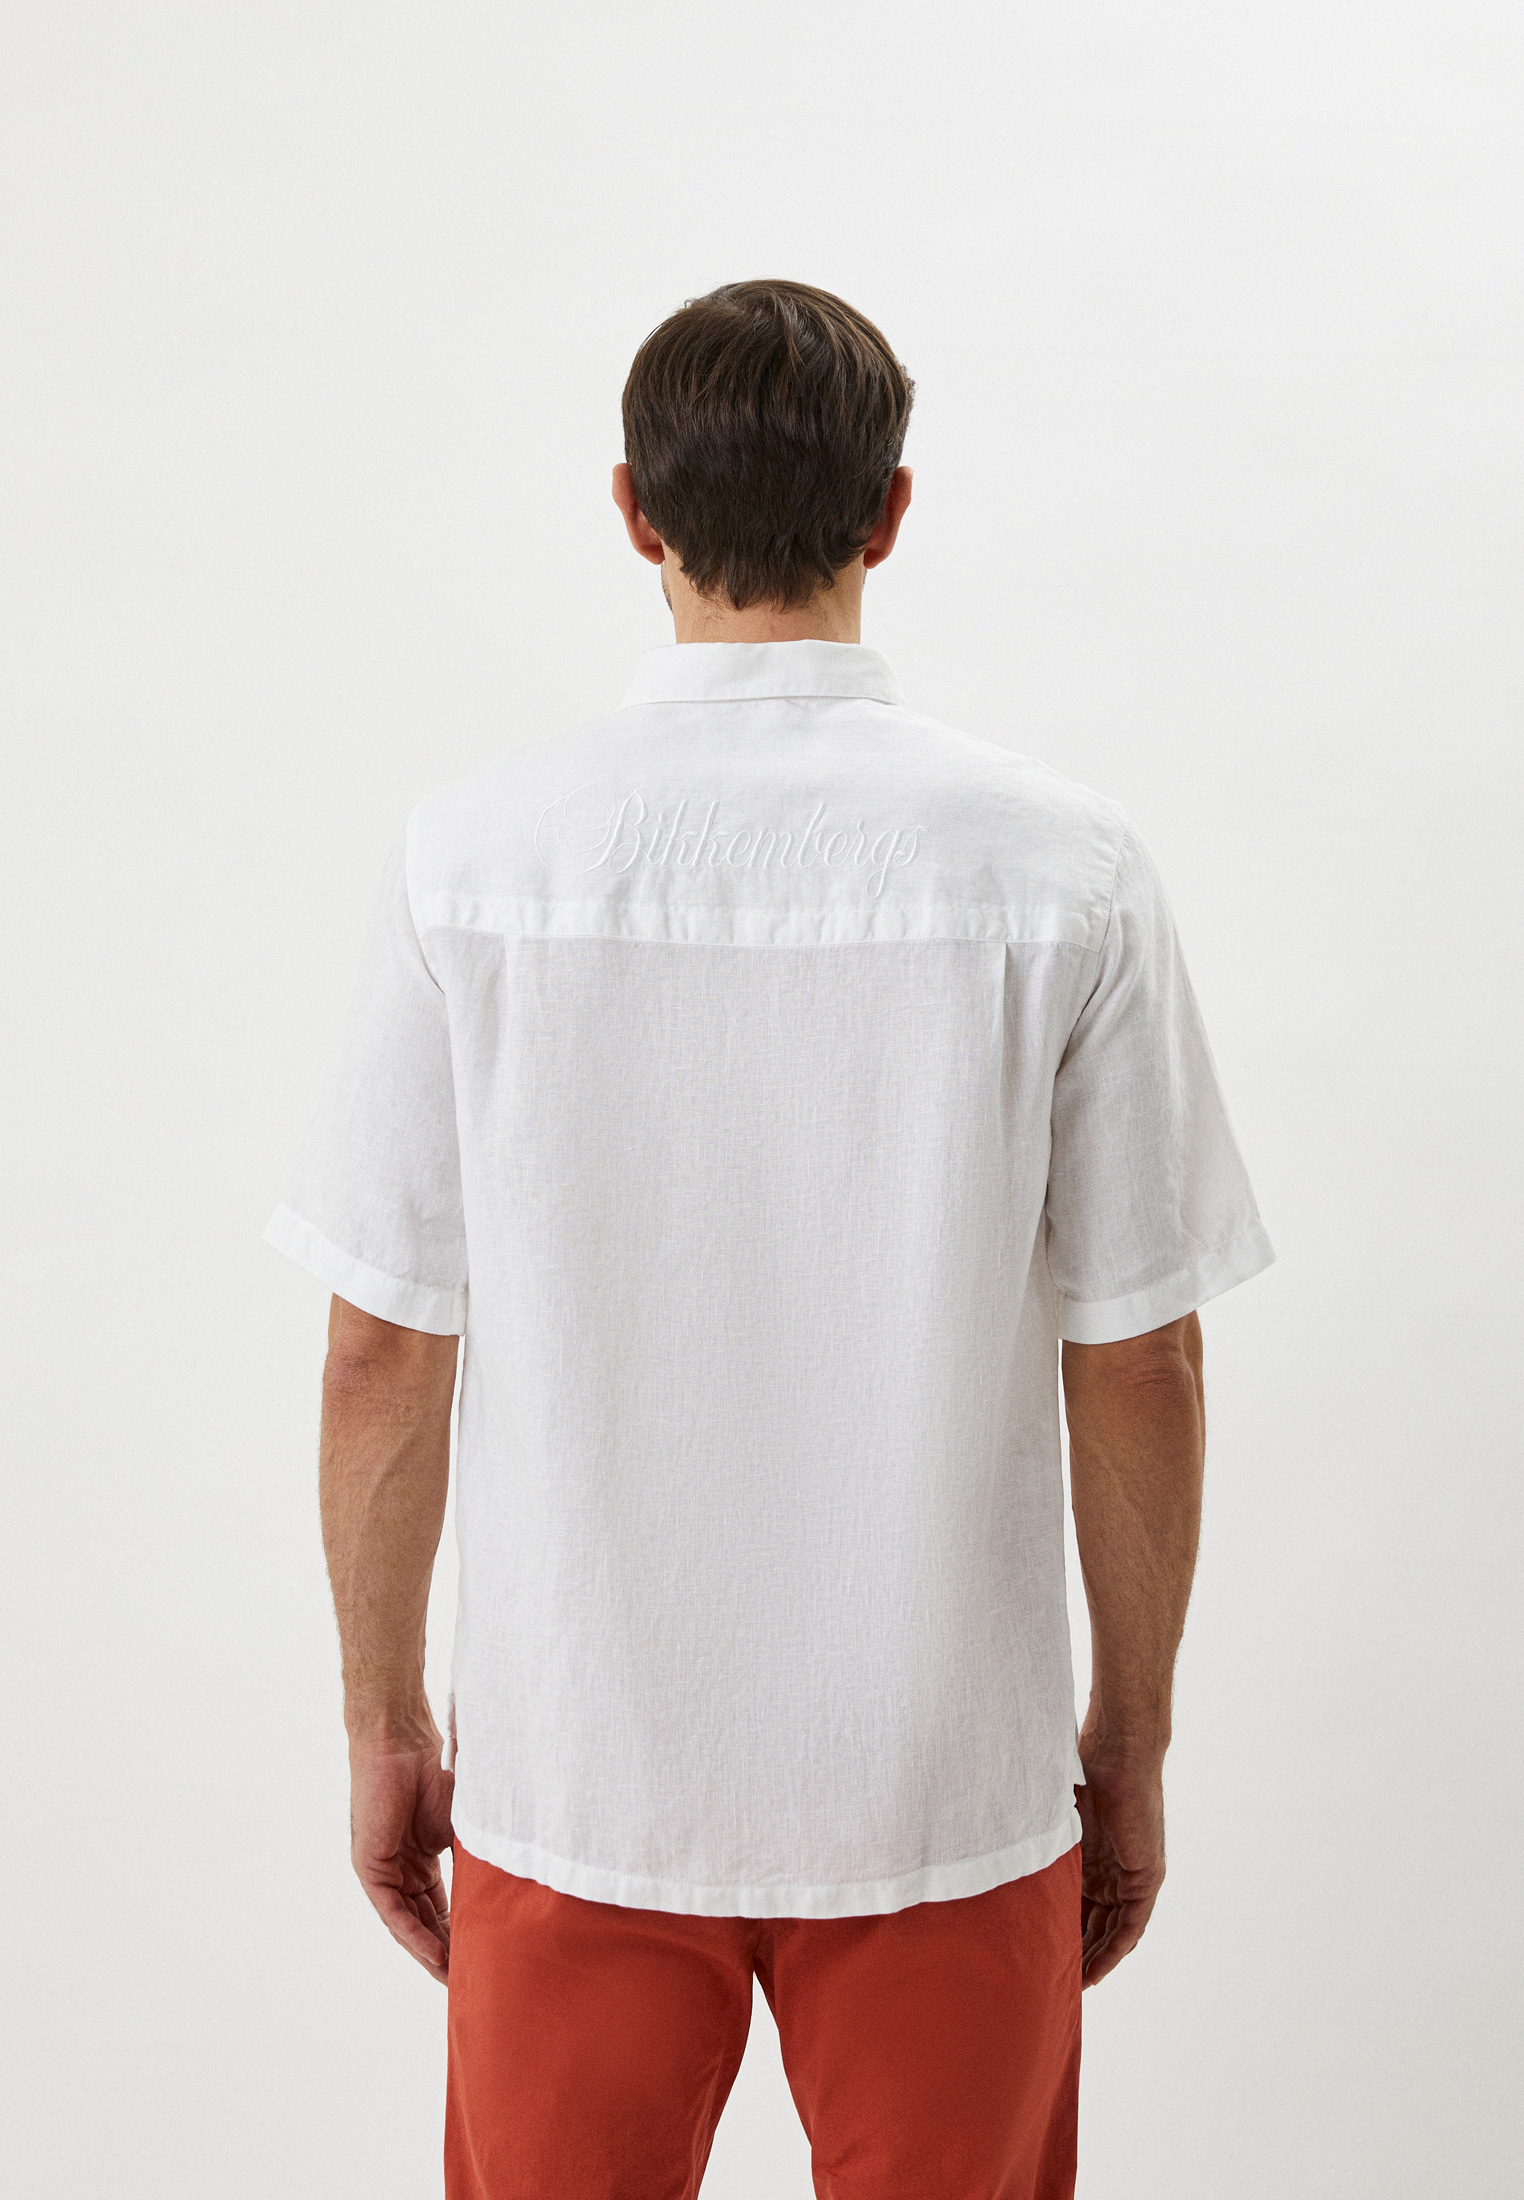 Рубашка с коротким рукавом Bikkembergs (Биккембергс) CC11801T349A: изображение 3